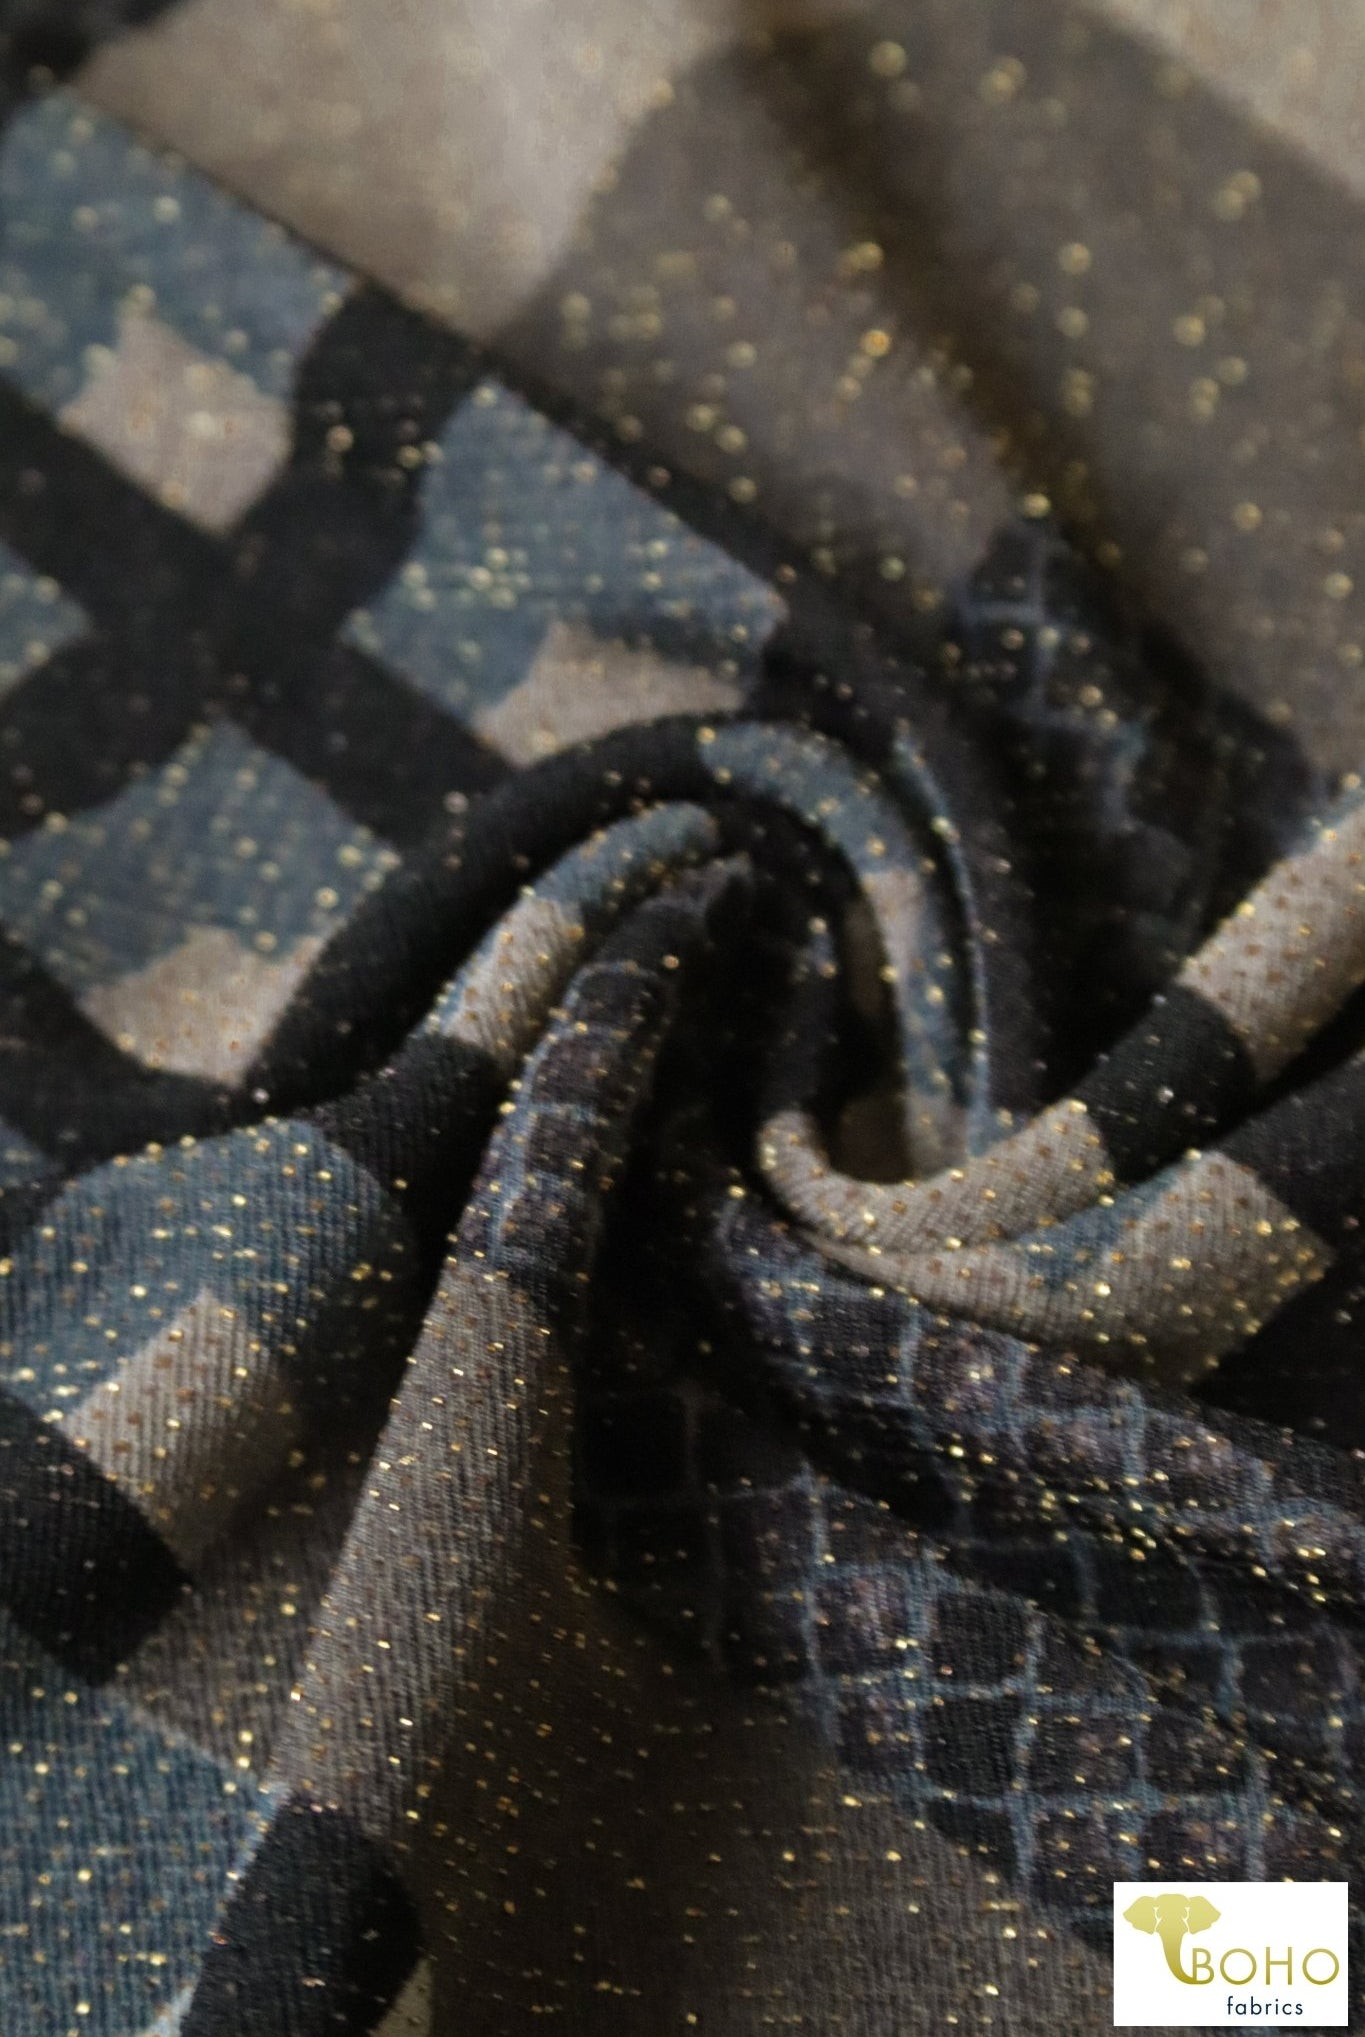 Last Cuts! Festive Deco Knit, ITY CREPE - Boho Fabrics - ITY/DTY Knits